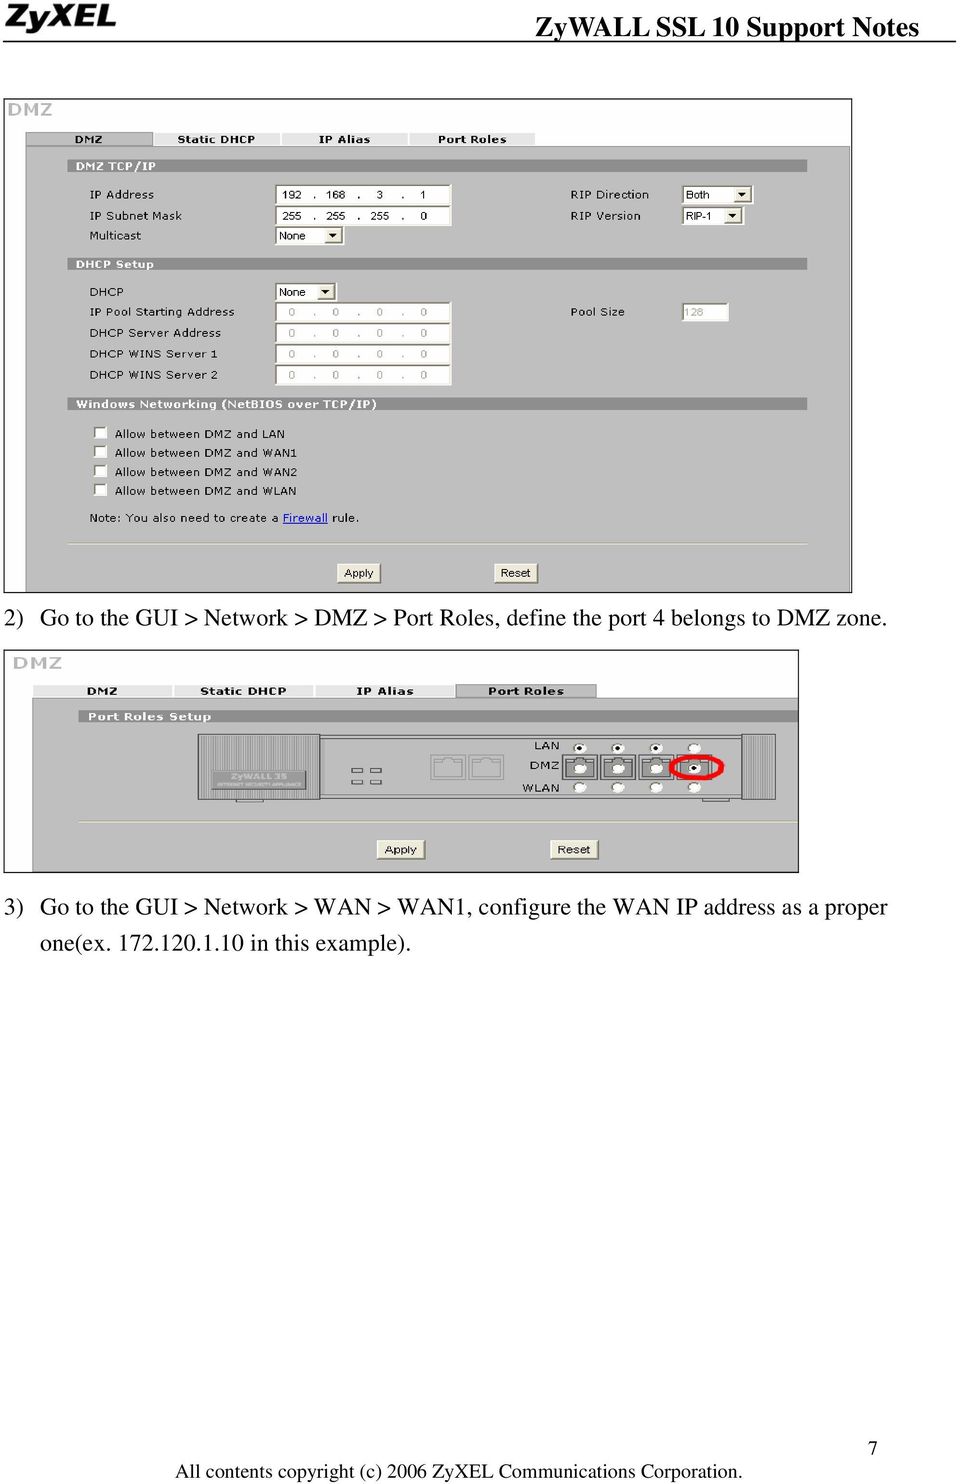 3) Go to the GUI > Network > WAN > WAN1, configure